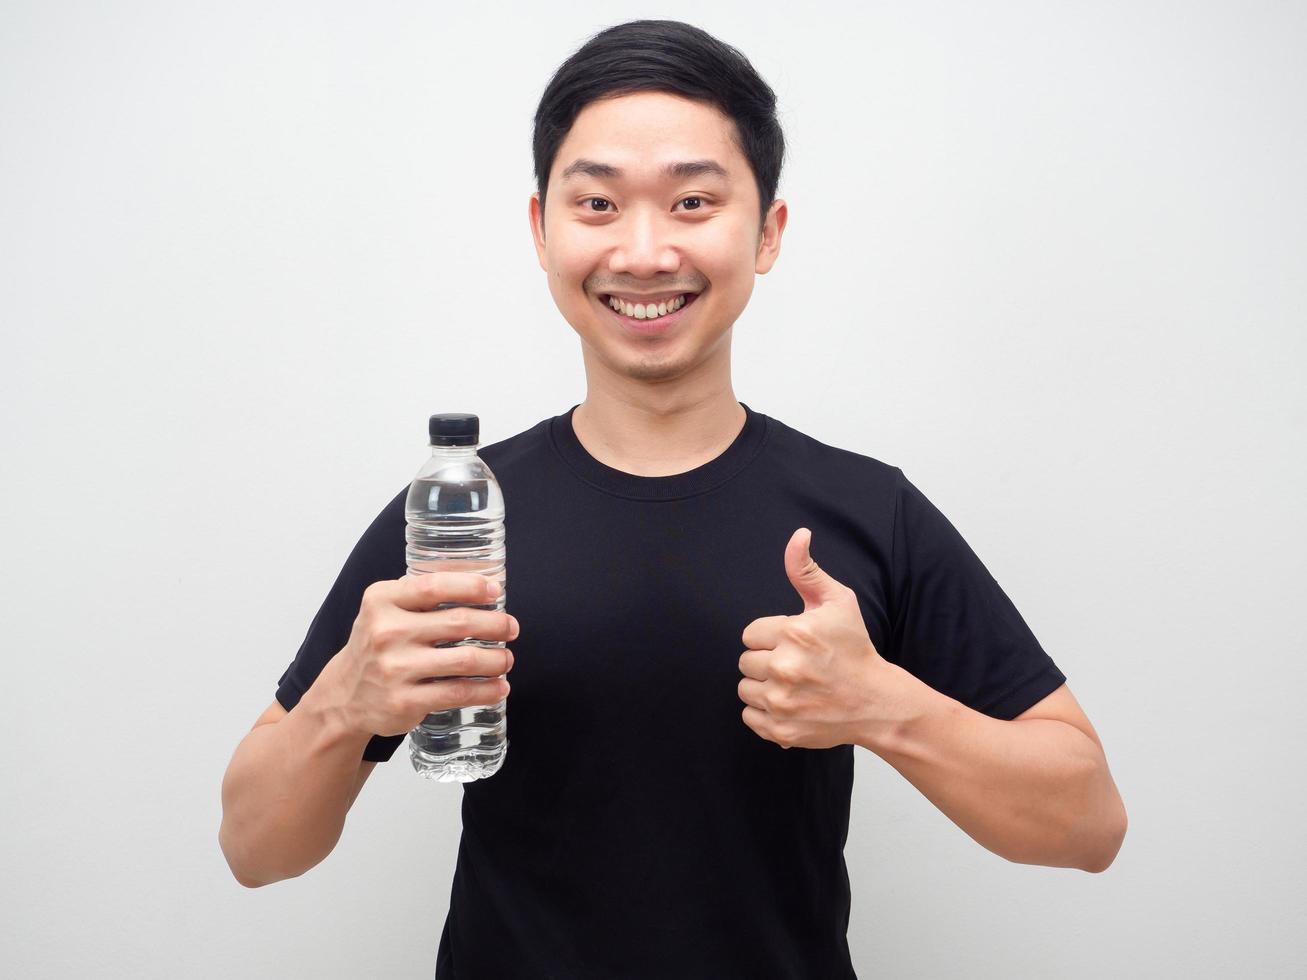 homme asiatique tenant une bouteille d'eau et le pouce vers le haut sourire heureux, homme gai avec une bouteille d'eau photo